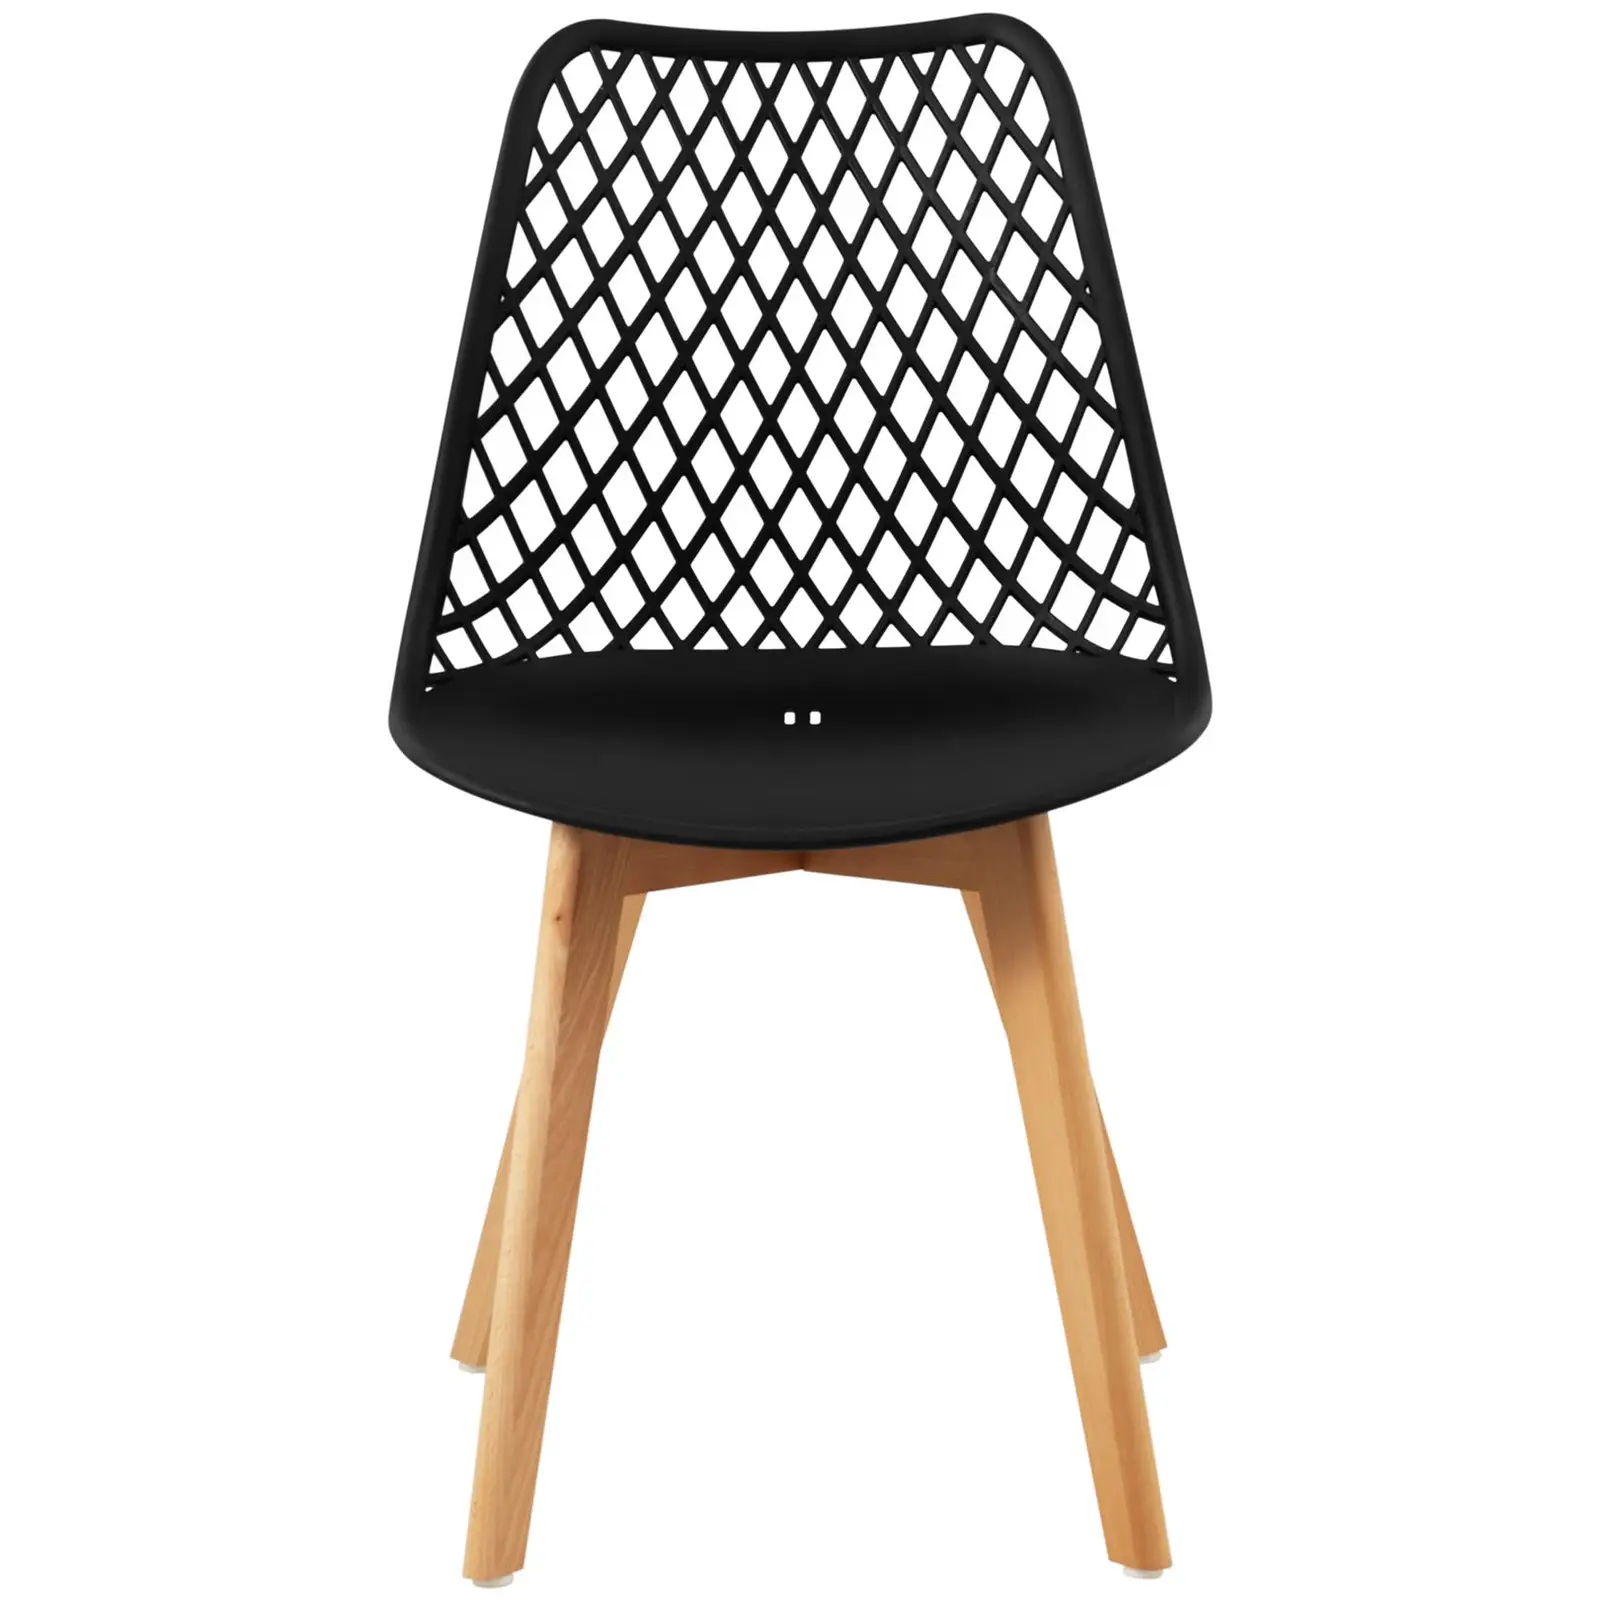 Chaise - Lot de 4 - 150 kg max. - Surface d'assise de 470 x 390 x 430 mm - Coloris noir - 7